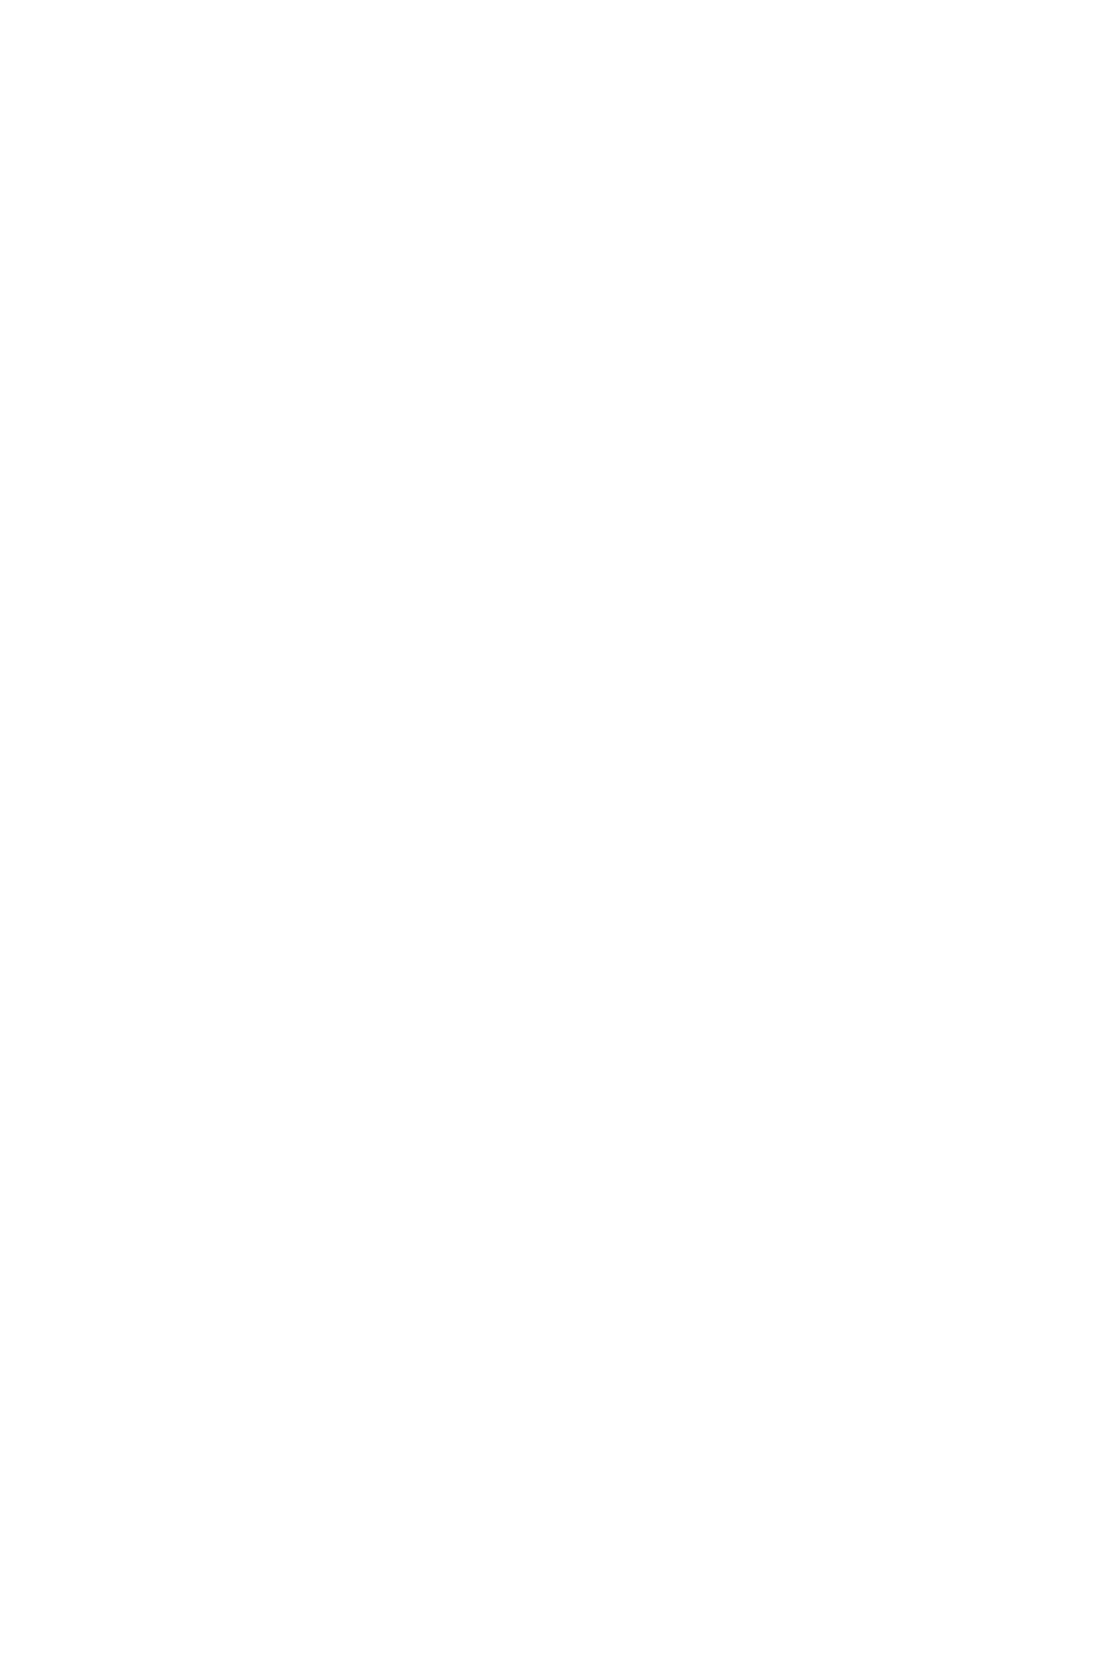 Пиджак женский двубортный с молниями большого размера заказать пошив в ателье СПб с доставкой по России, в Беларусь и Казахстан